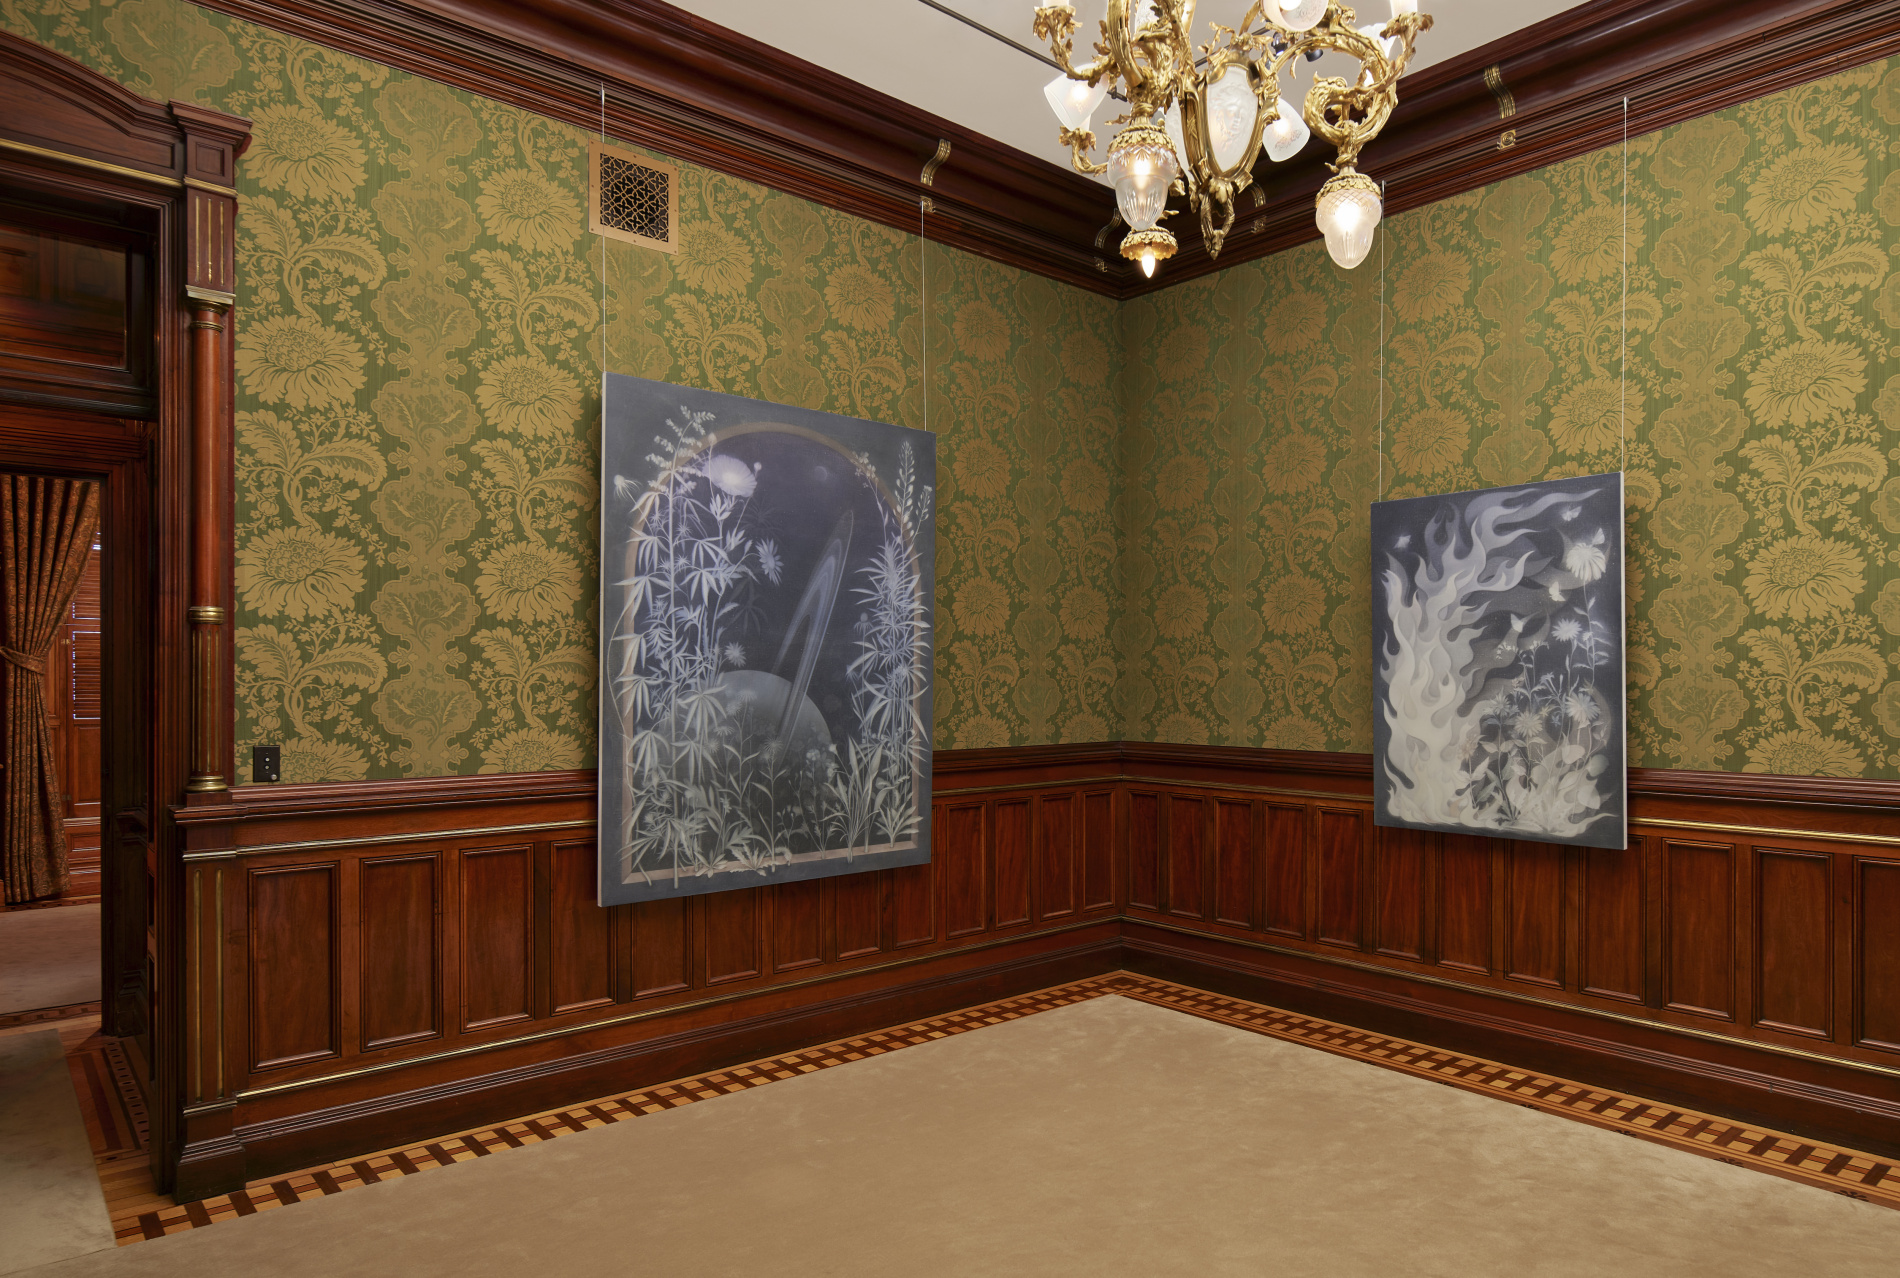 Chicago | Tour & Reception: ‘Theodora Allen: Saturnine’ at the Driehaus Museum, with Anna Musci & Stephanie Cristello